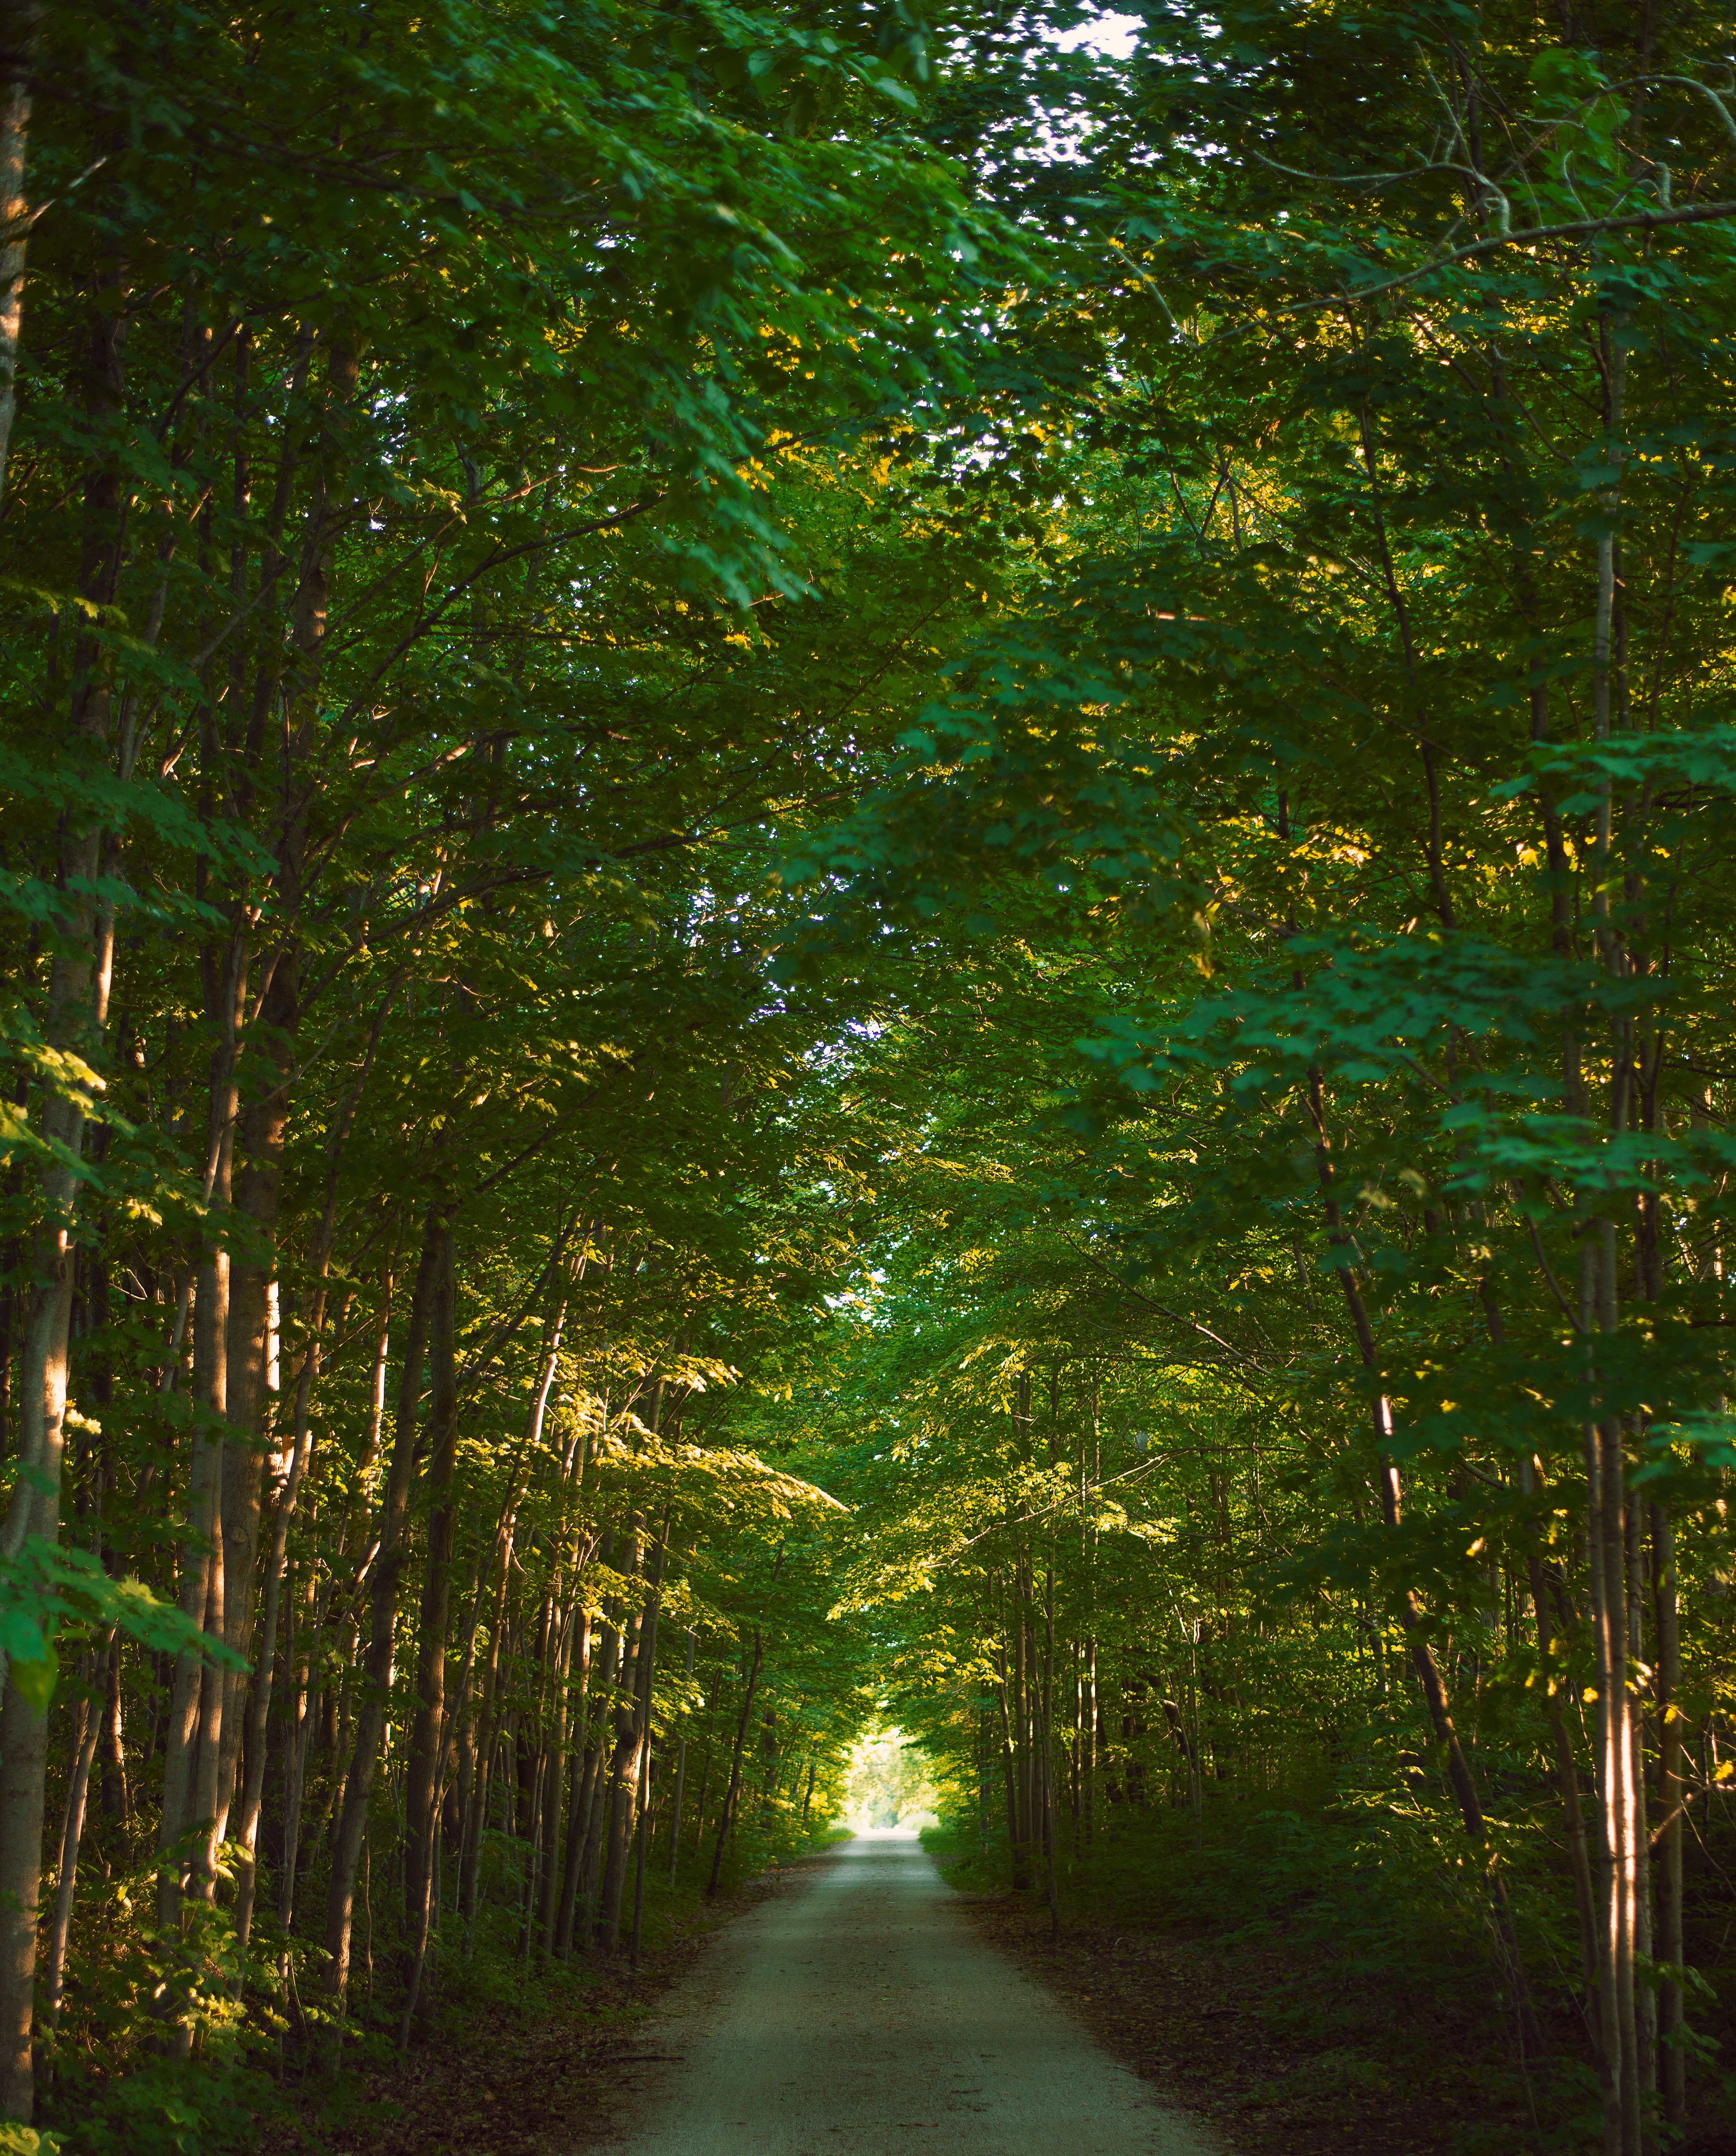 Route vide Shrowed par des arbres verts Photo 